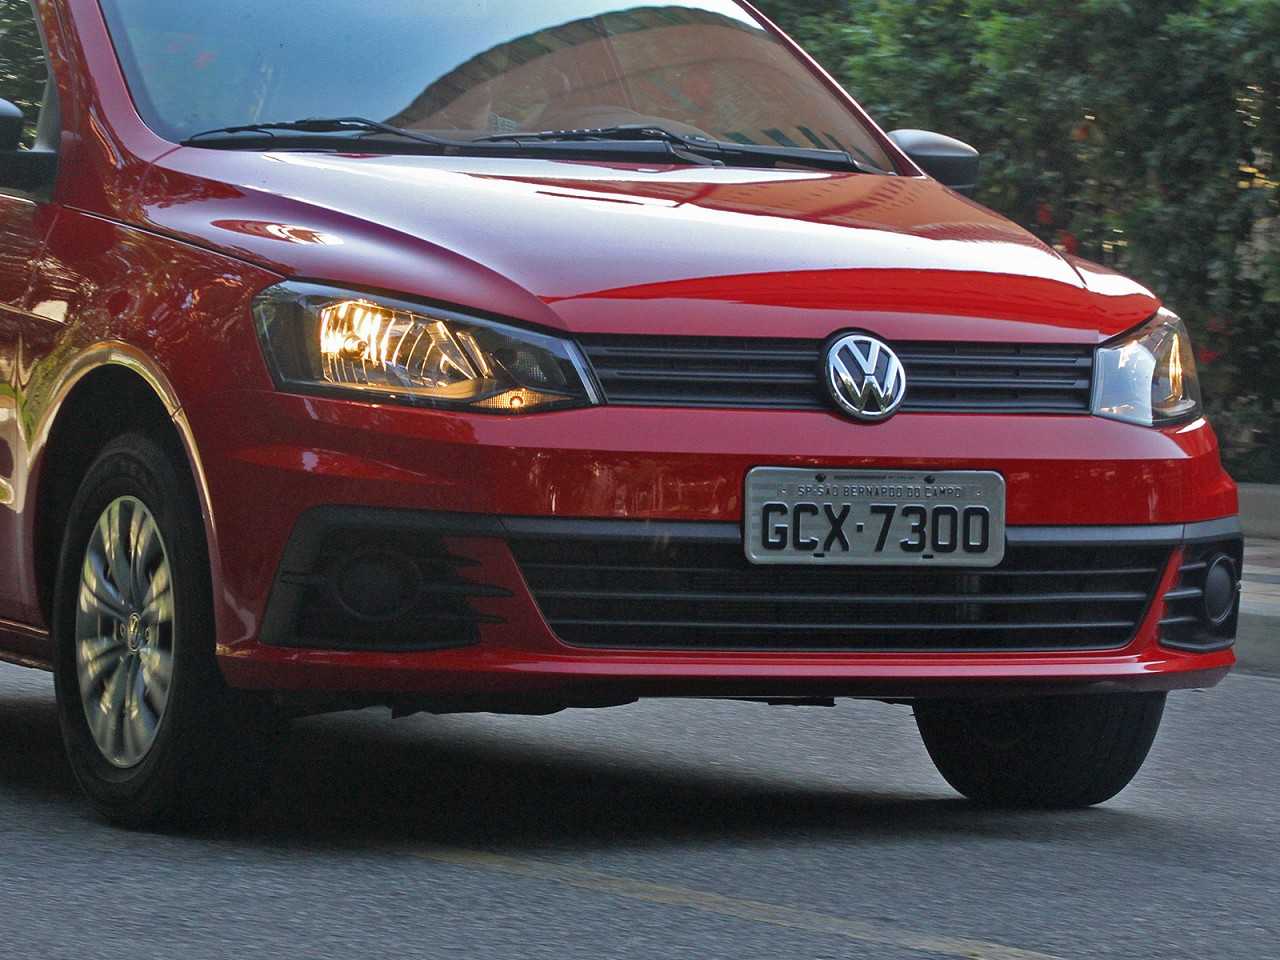 VolkswagenGol 2017 - grade frontal